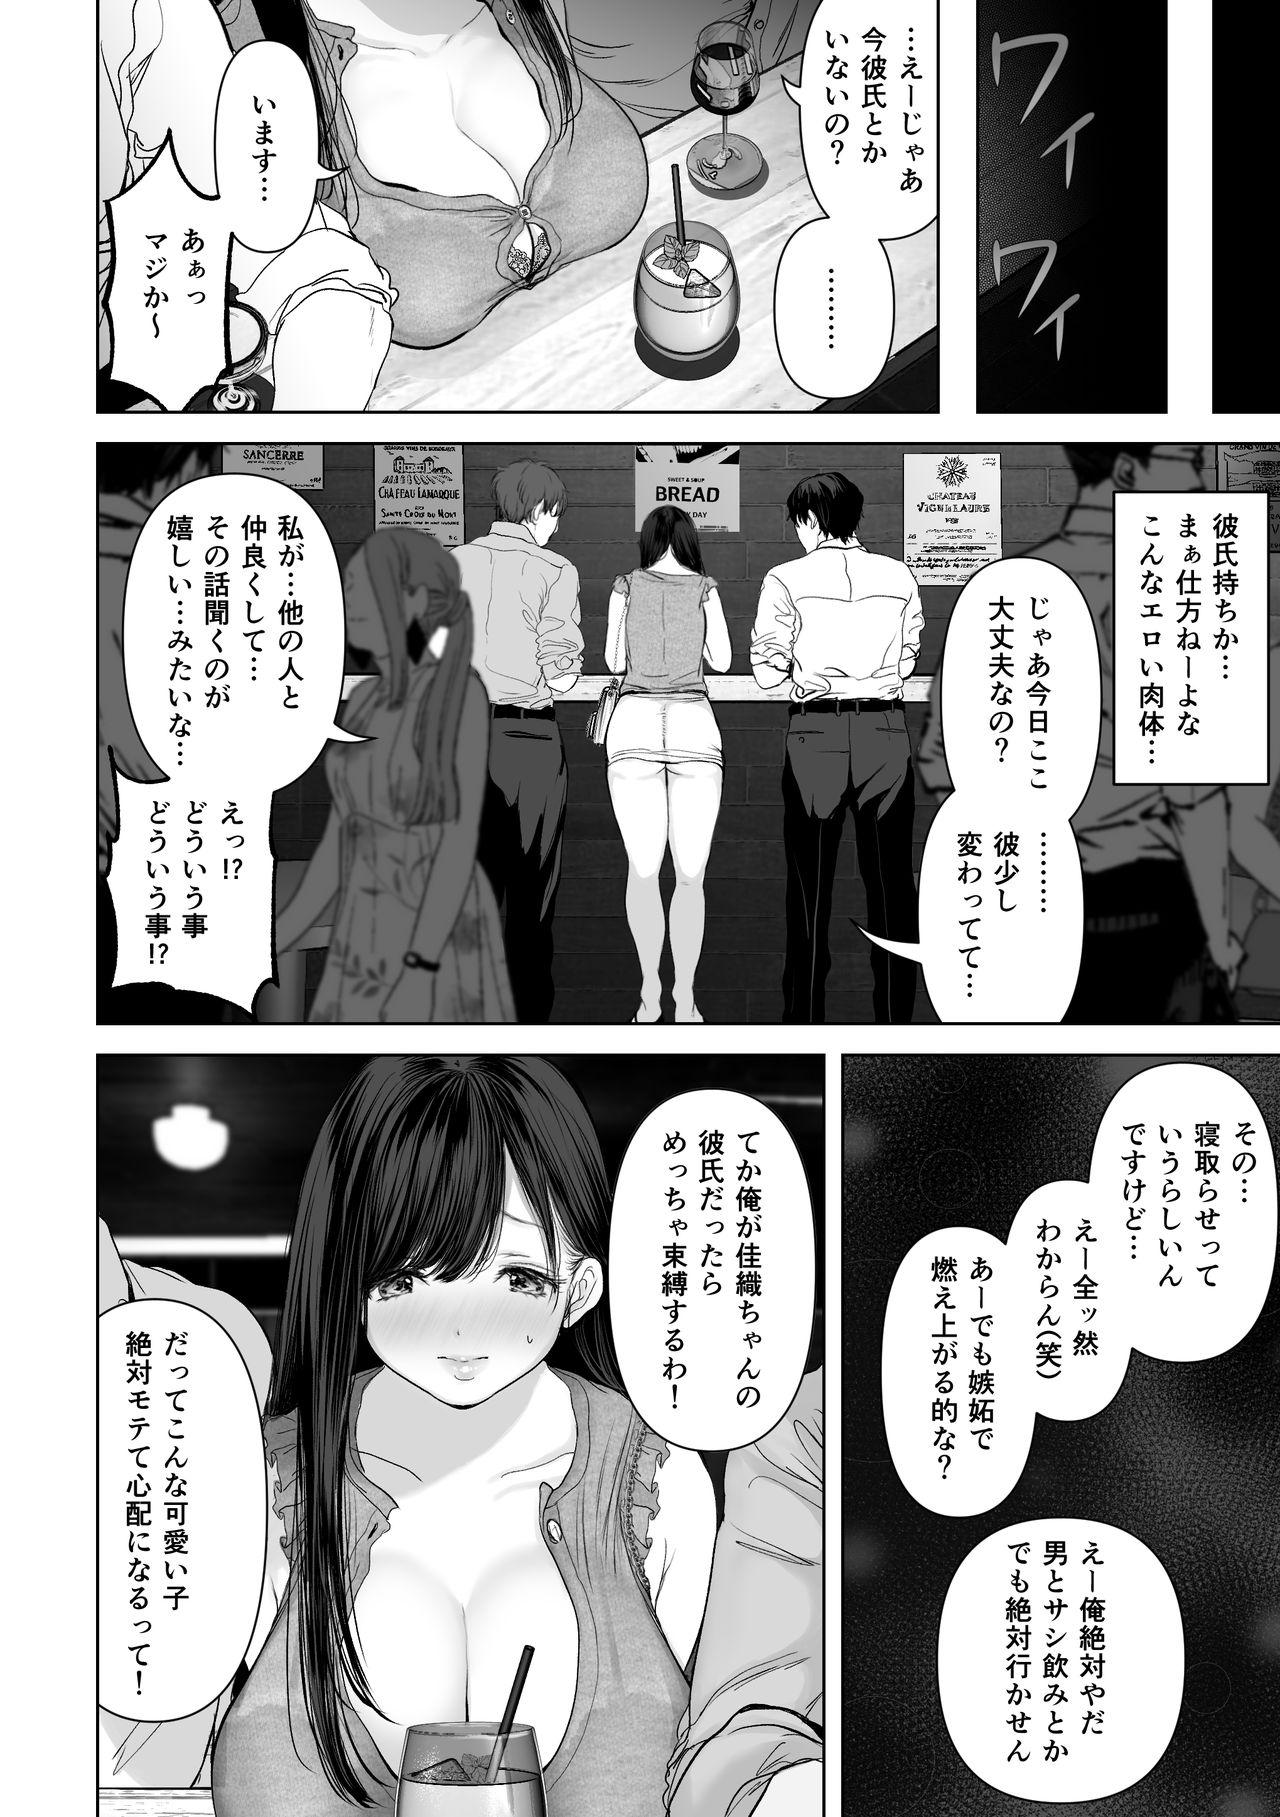 Romance Anata ga Nozomu nara 2 - Original Nena - Page 5